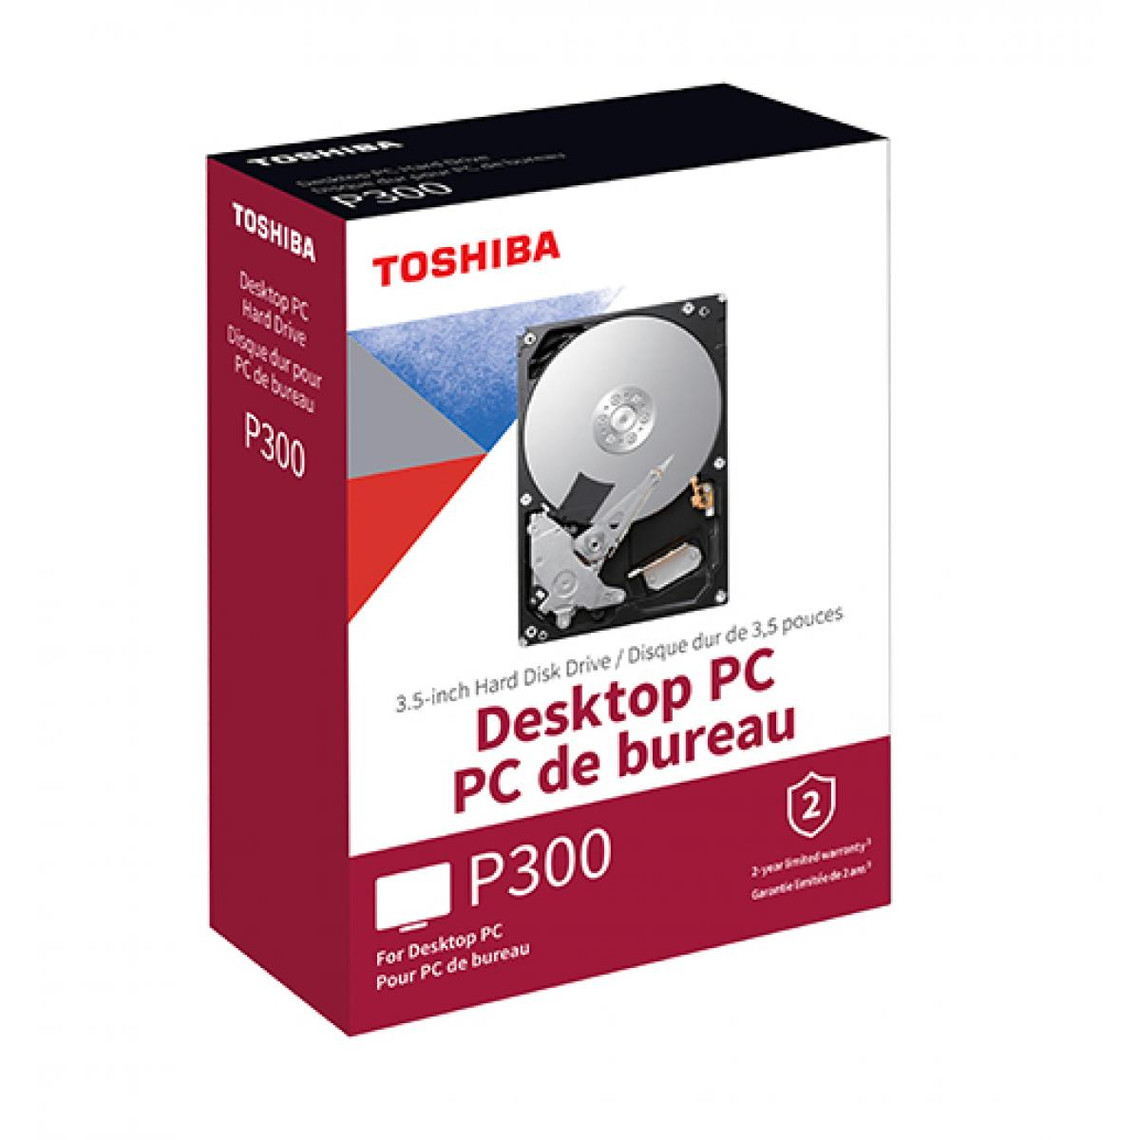 Toshiba P300 6 To Disque dur